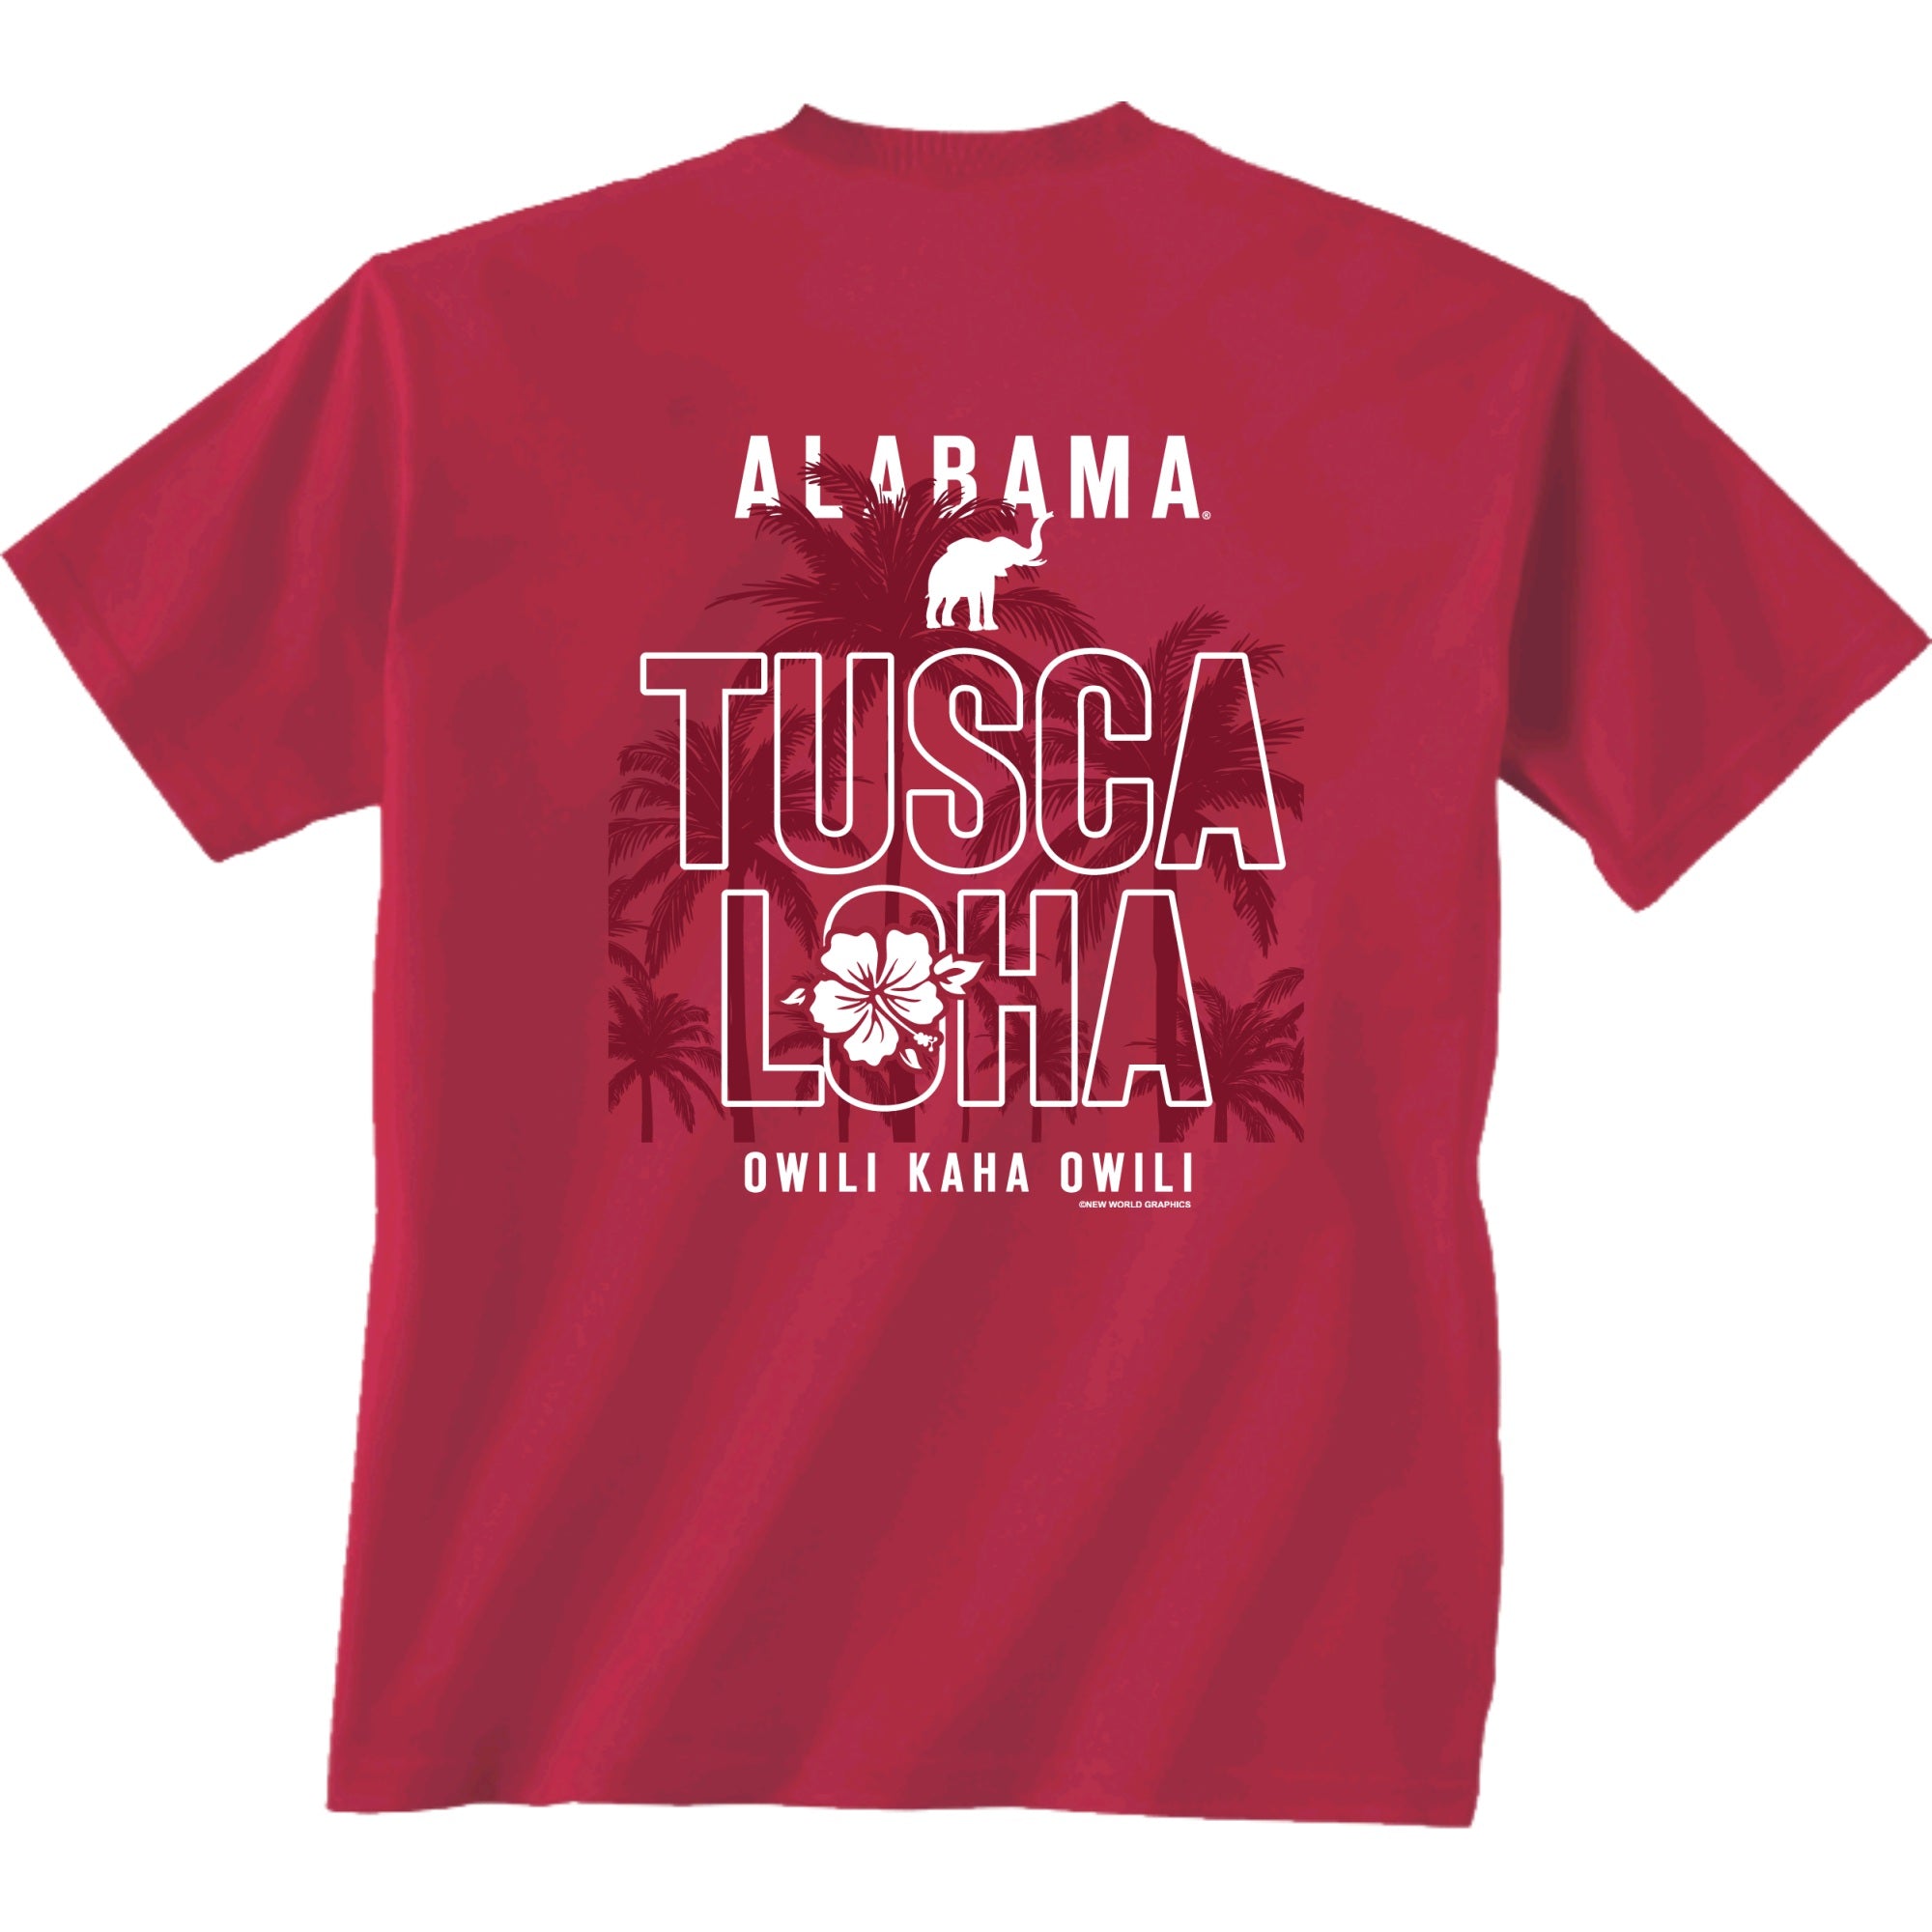 Official "Tusca-loha" Shirt